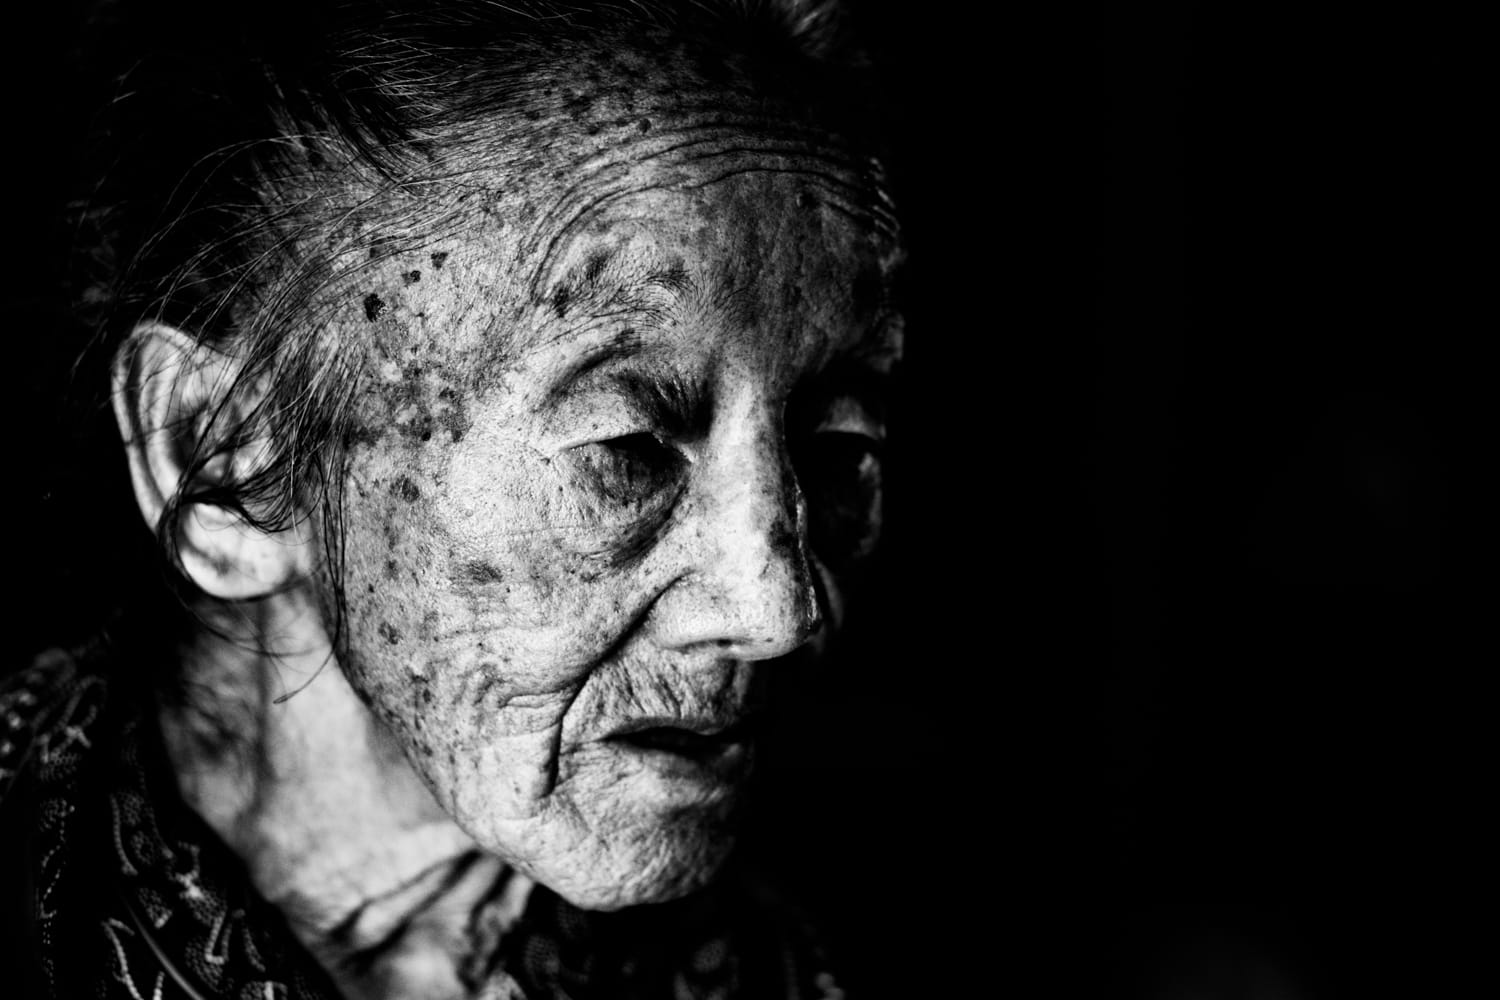 Old Hmong woman near Chiang Mai